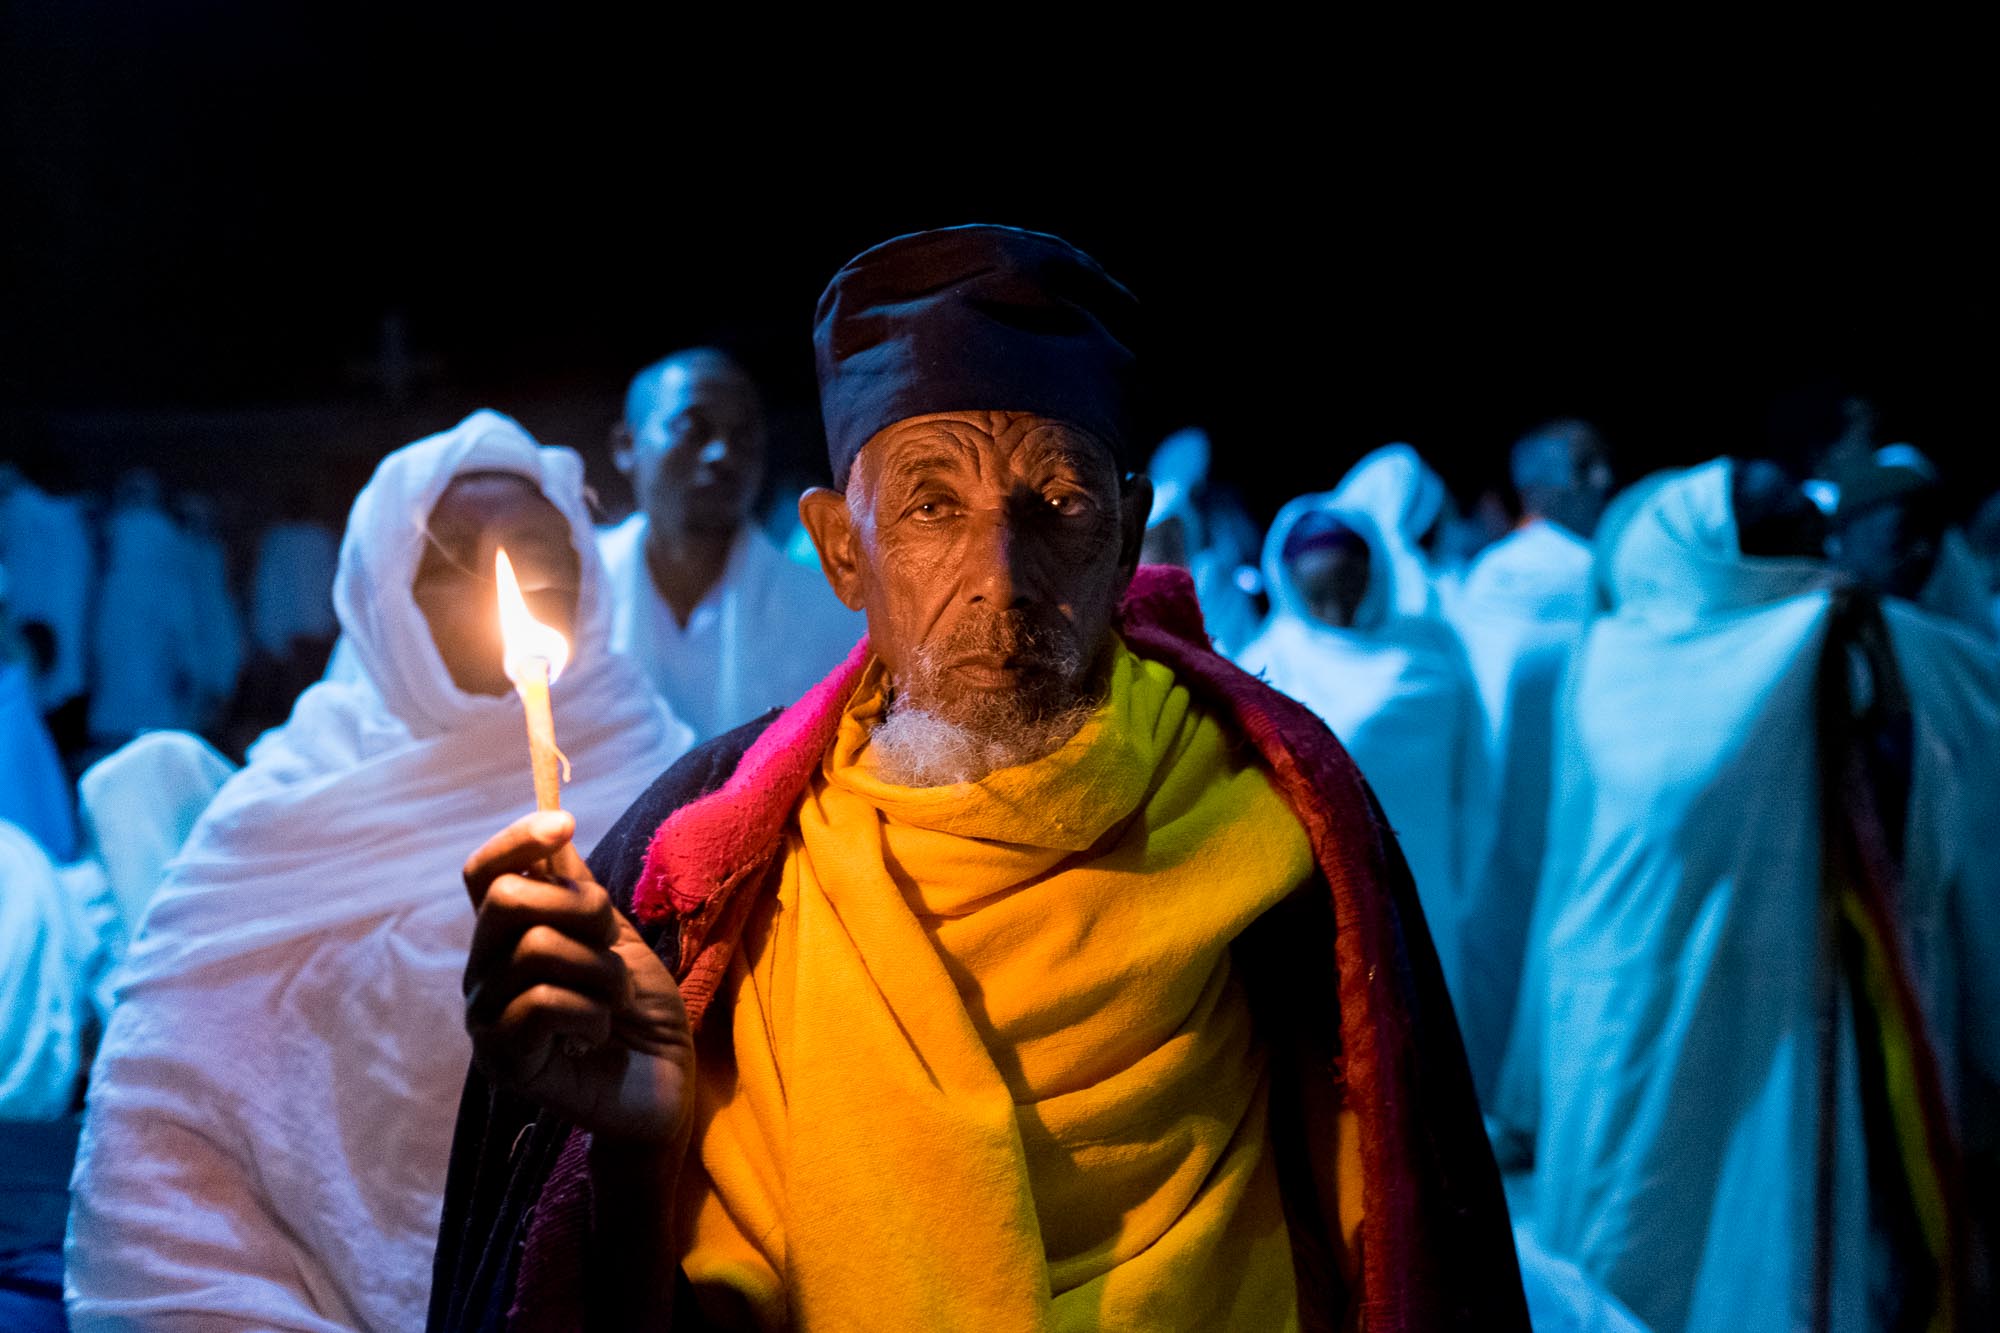 La tradizione natalizia in Etiopia